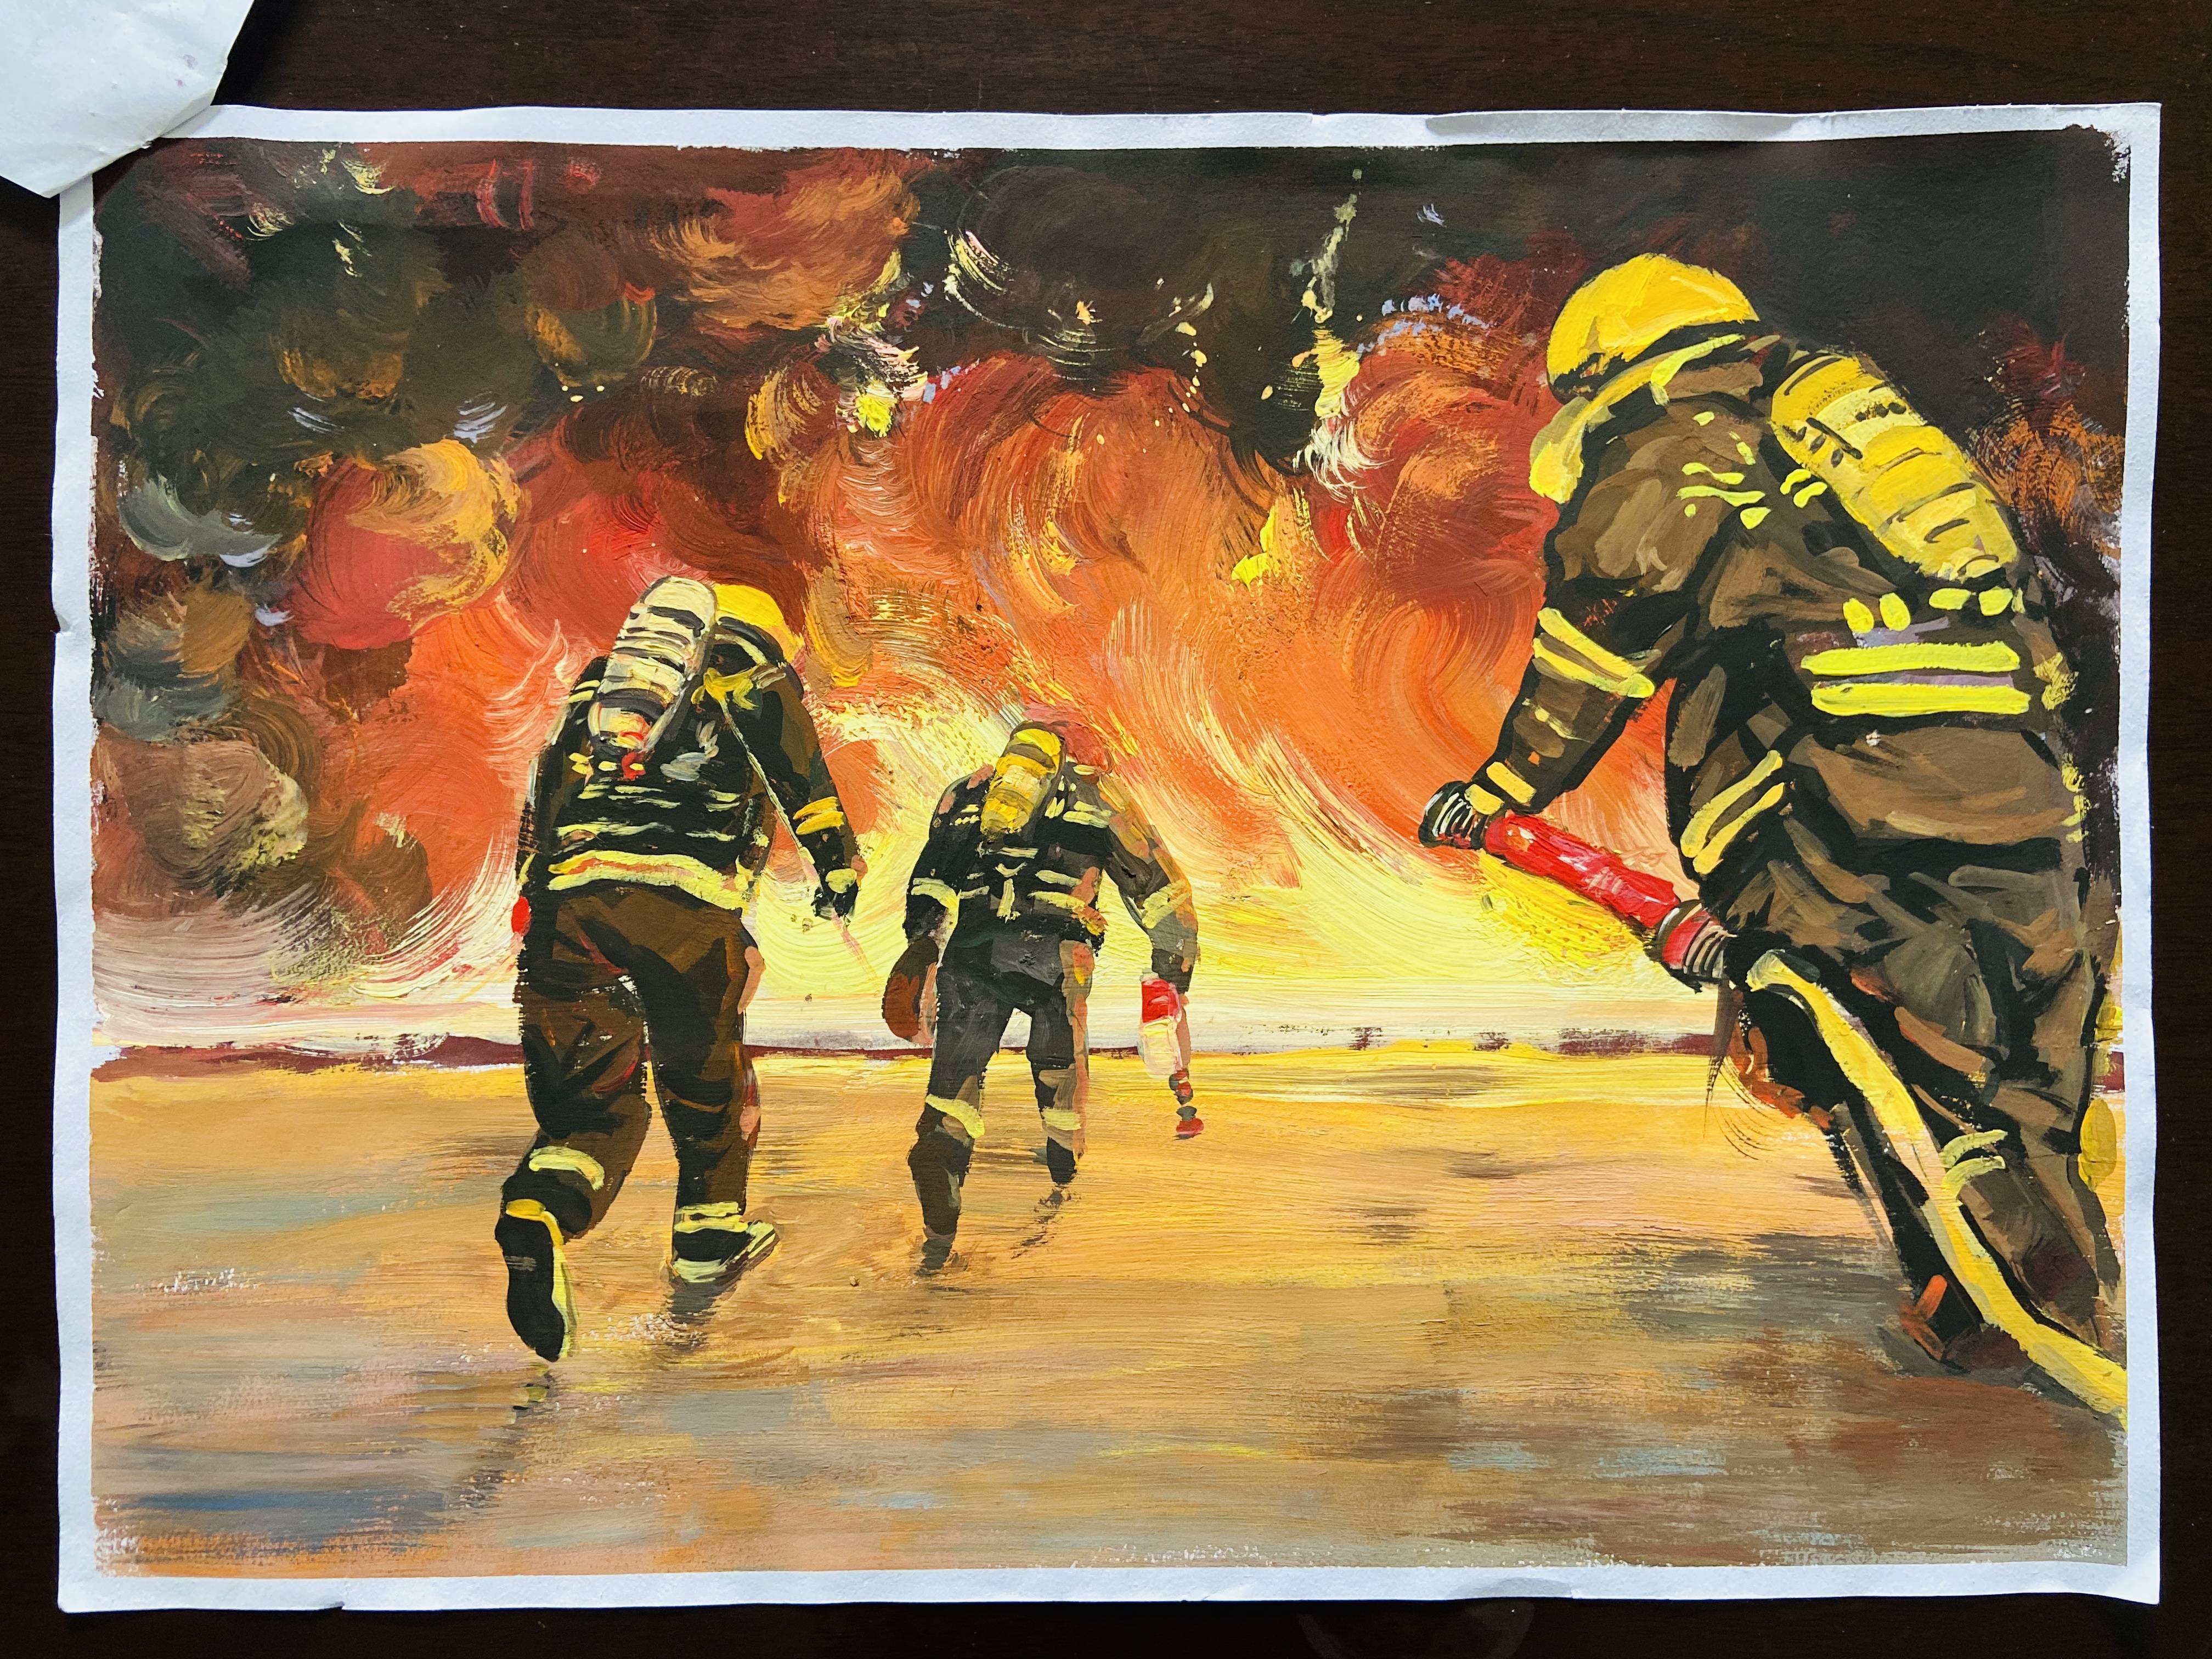 消防安全绘画大赛图片